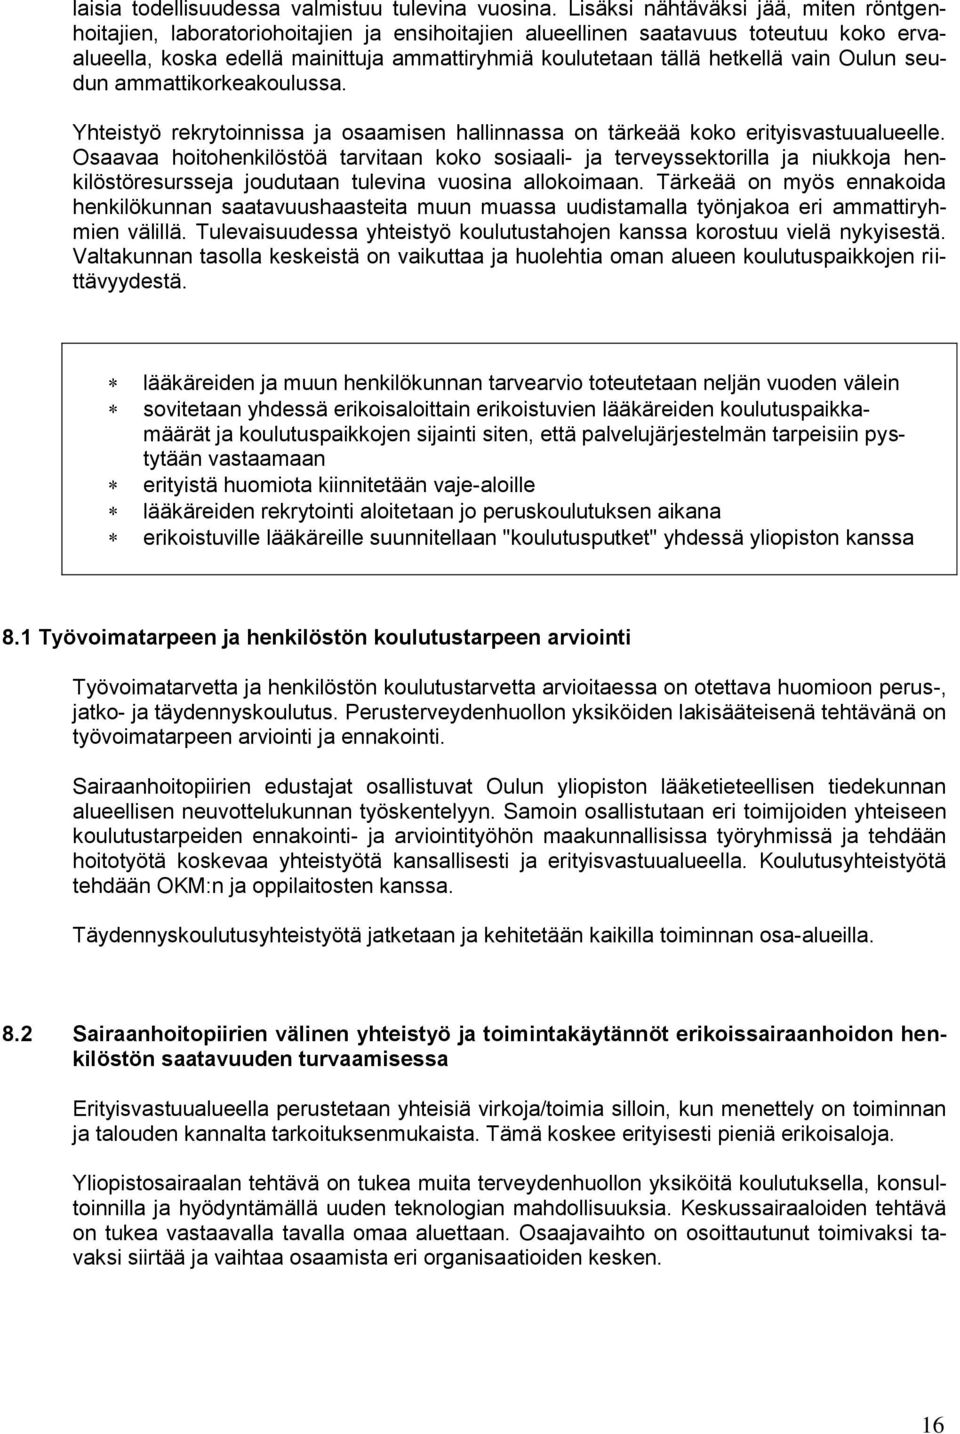 hetkellä vain Oulun seudun ammattikorkeakoulussa. Yhteistyö rekrytoinnissa ja osaamisen hallinnassa on tärkeää koko erityisvastuualueelle.